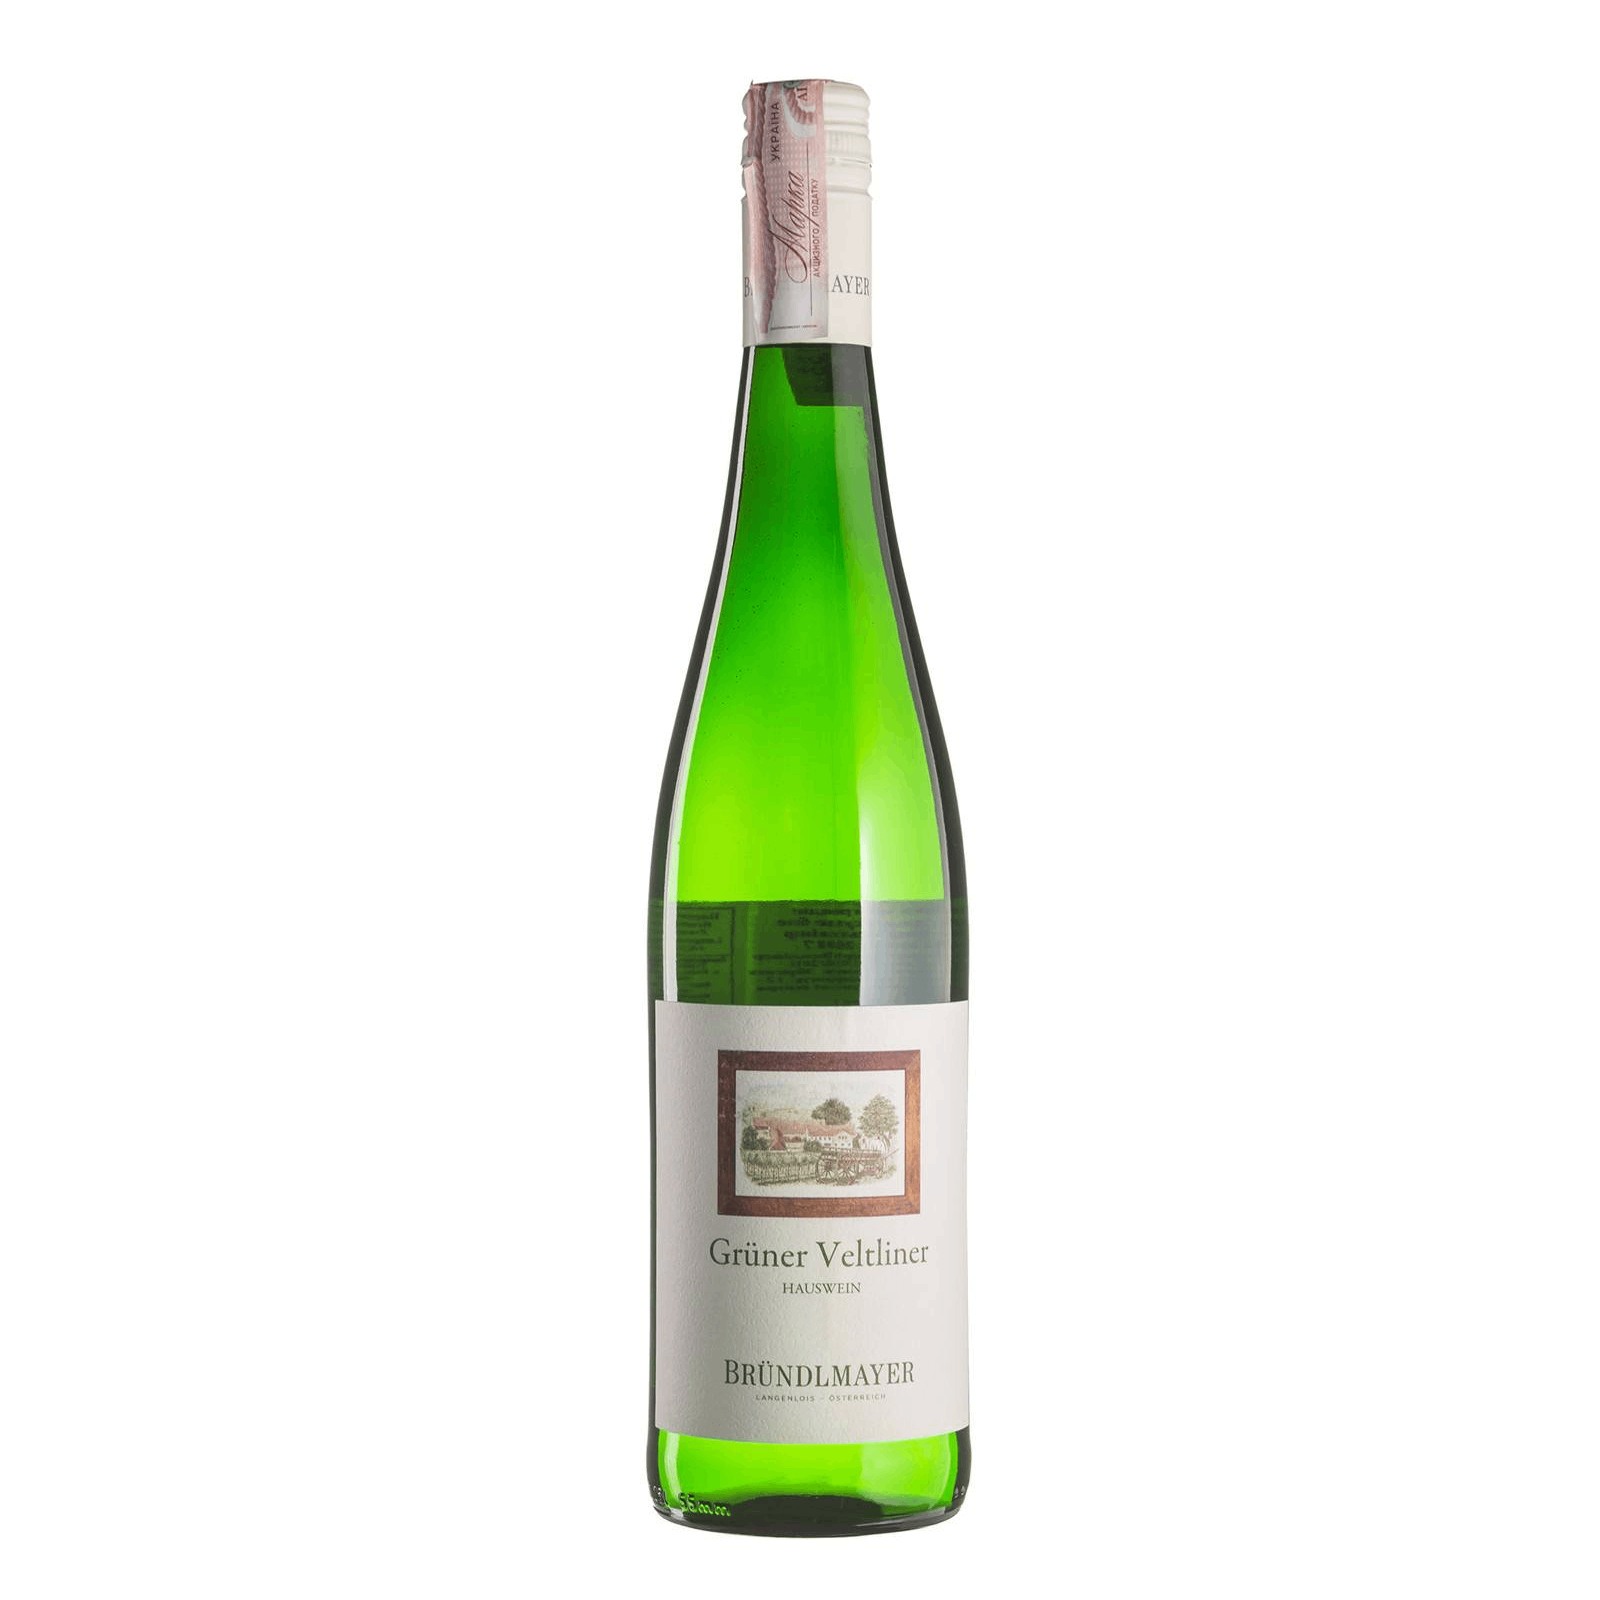 Вино Brundlmayer Gruner Veltliner Hauswein, белое, сухое, 0,75 л - фото 1